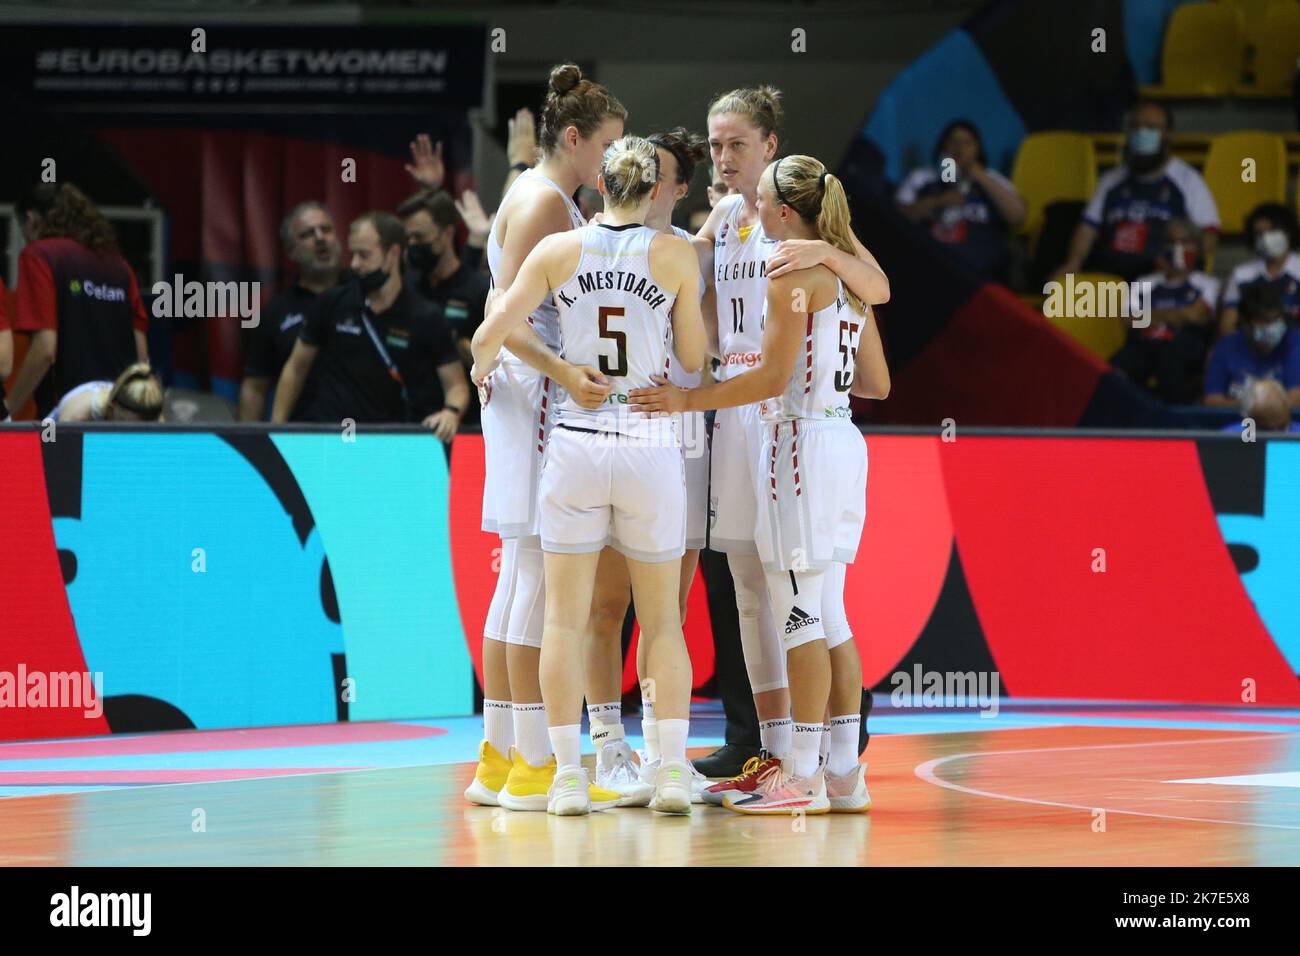 ©Laurent Lairys/MAXPPP - Team Belgien während des FIBA Women's EuroBasket 2021, Viertelfinale-Basketballspiels zwischen Belgien und Russland am 23. Juni 2021 bei Rhenus Sport in Straßburg, Frankreich - Foto Laurent Lairys / MAXPPP Stockfoto